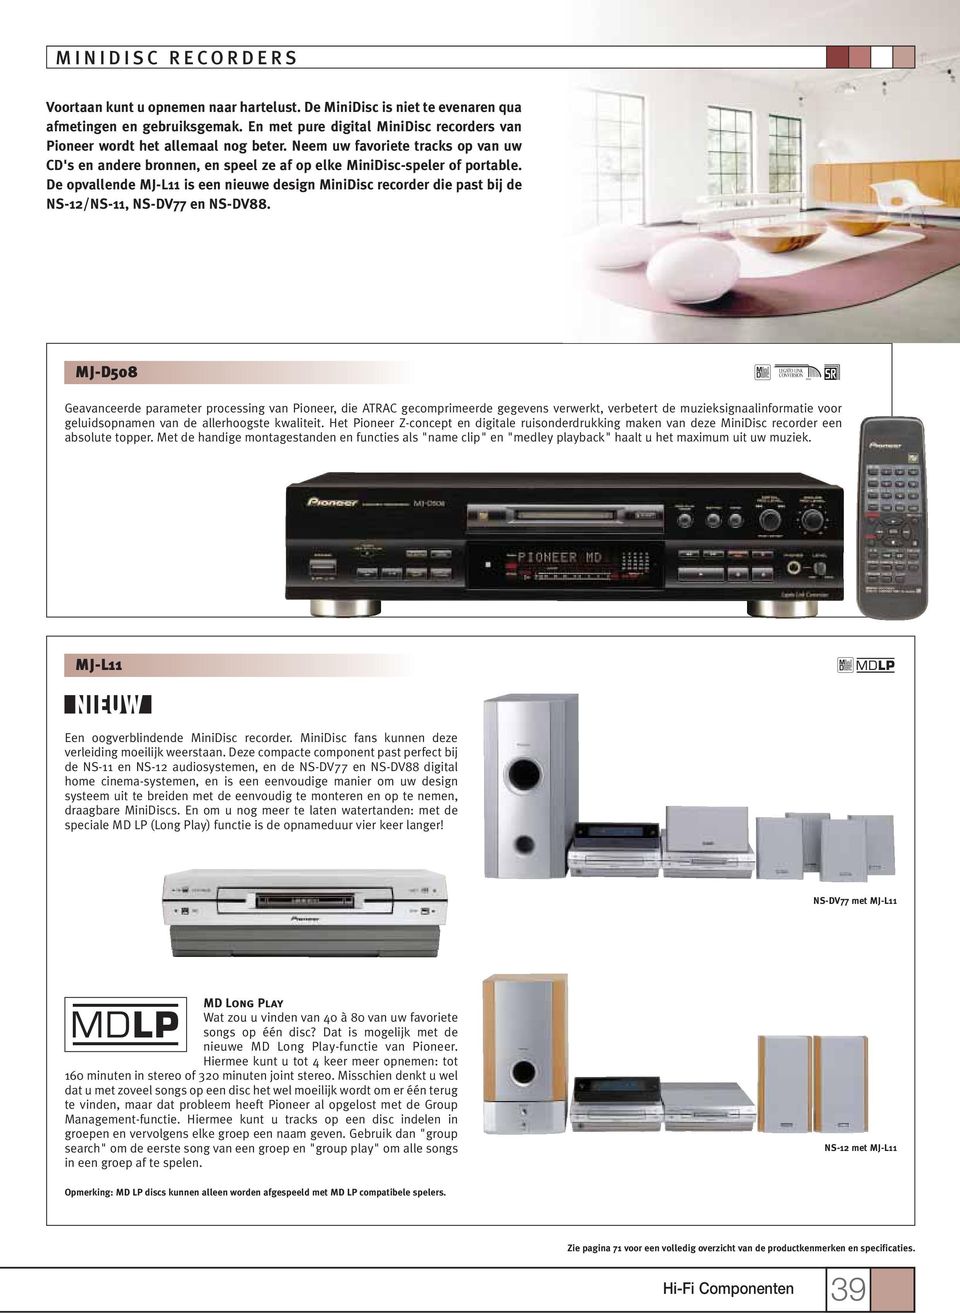 De opvallende MJ-L11 is een nieuwe design MiniDisc recorder die past bij de NS-12/NS-11, NS-DV77 en NS-DV88.